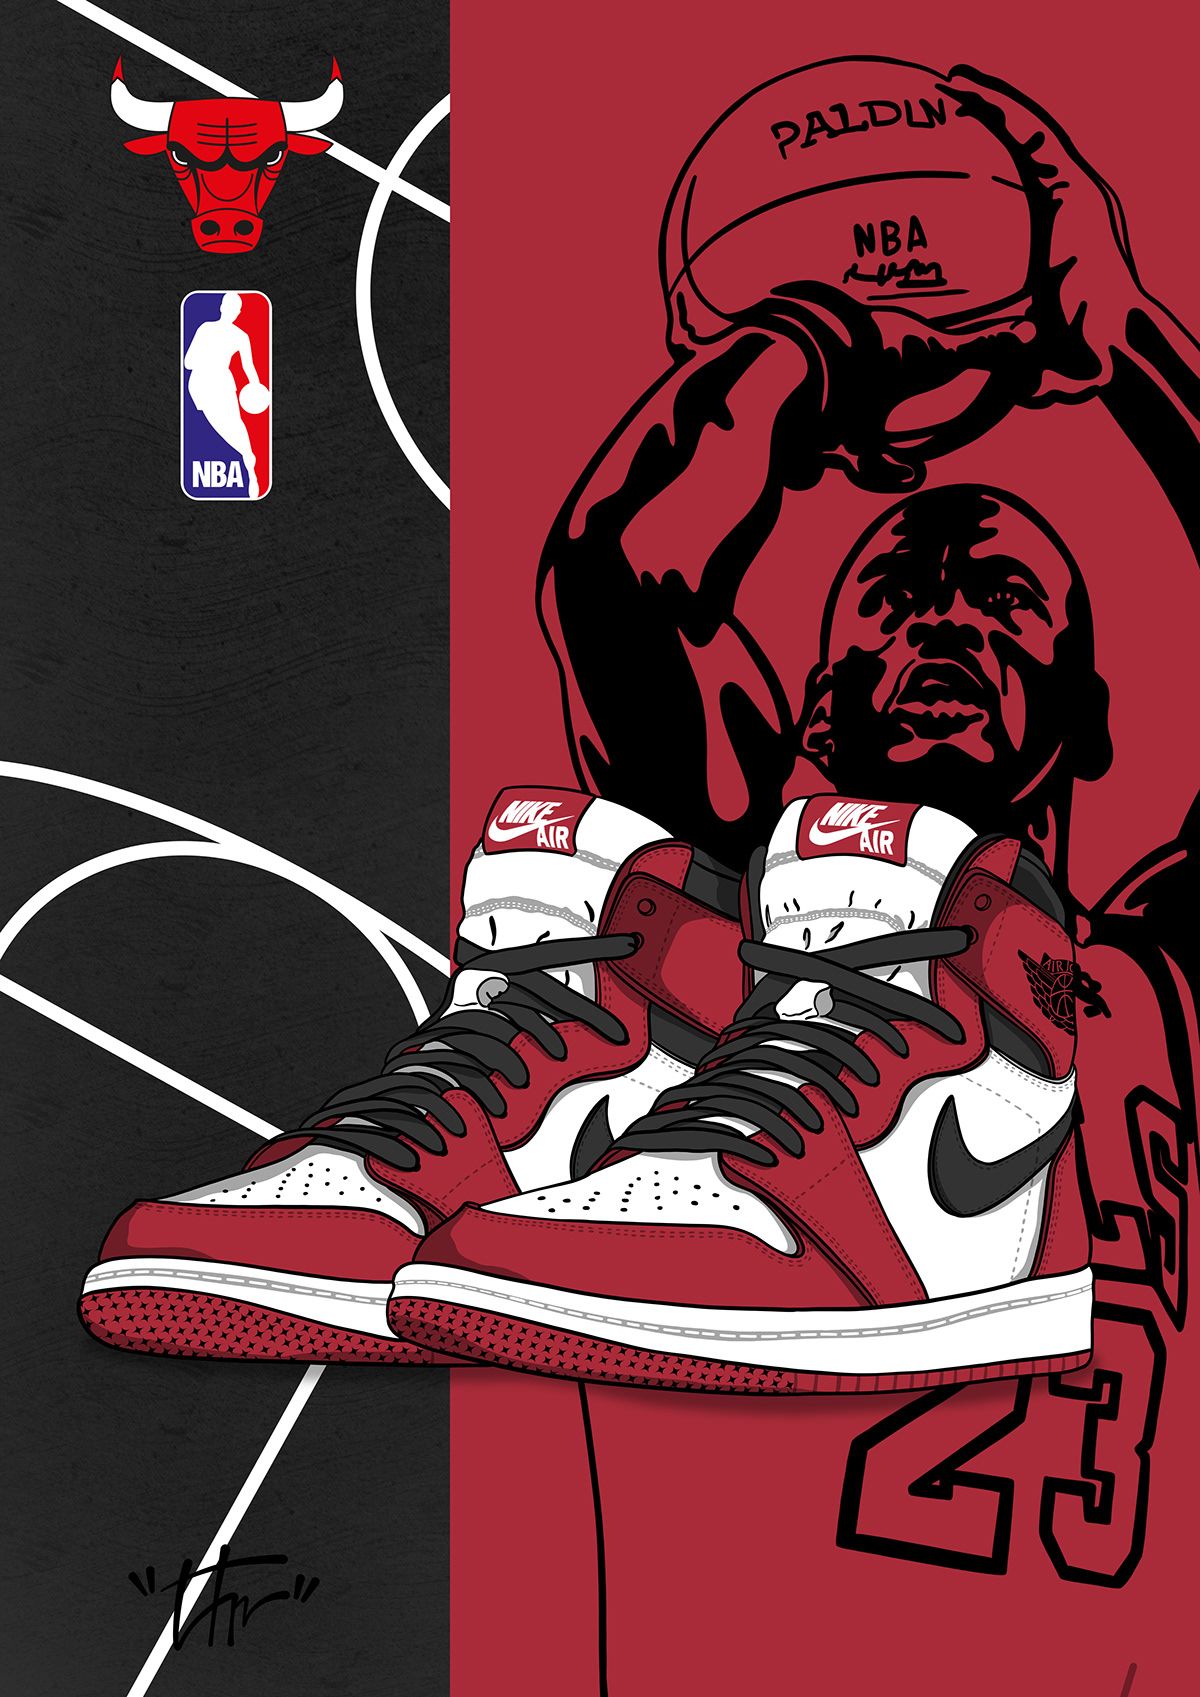 Air Jordan 1 Retro Chicago. Nike art, Jordan logo wallpaper, Sneakers illustration